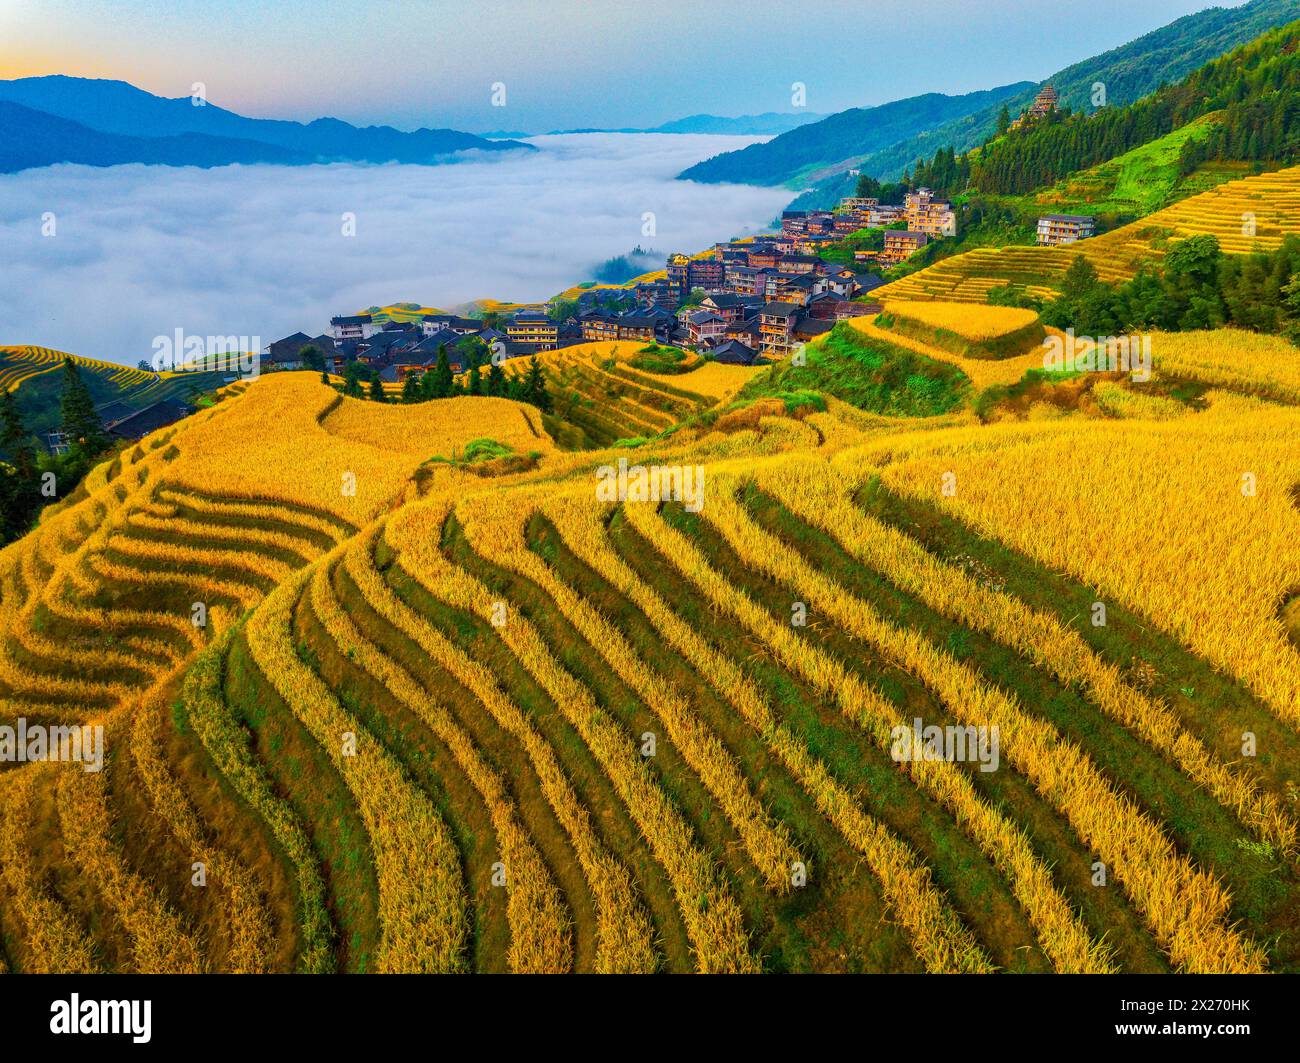 Beautiful Autumn Rice Harvest Scenery in Longji Terraced Fields Stock Photo